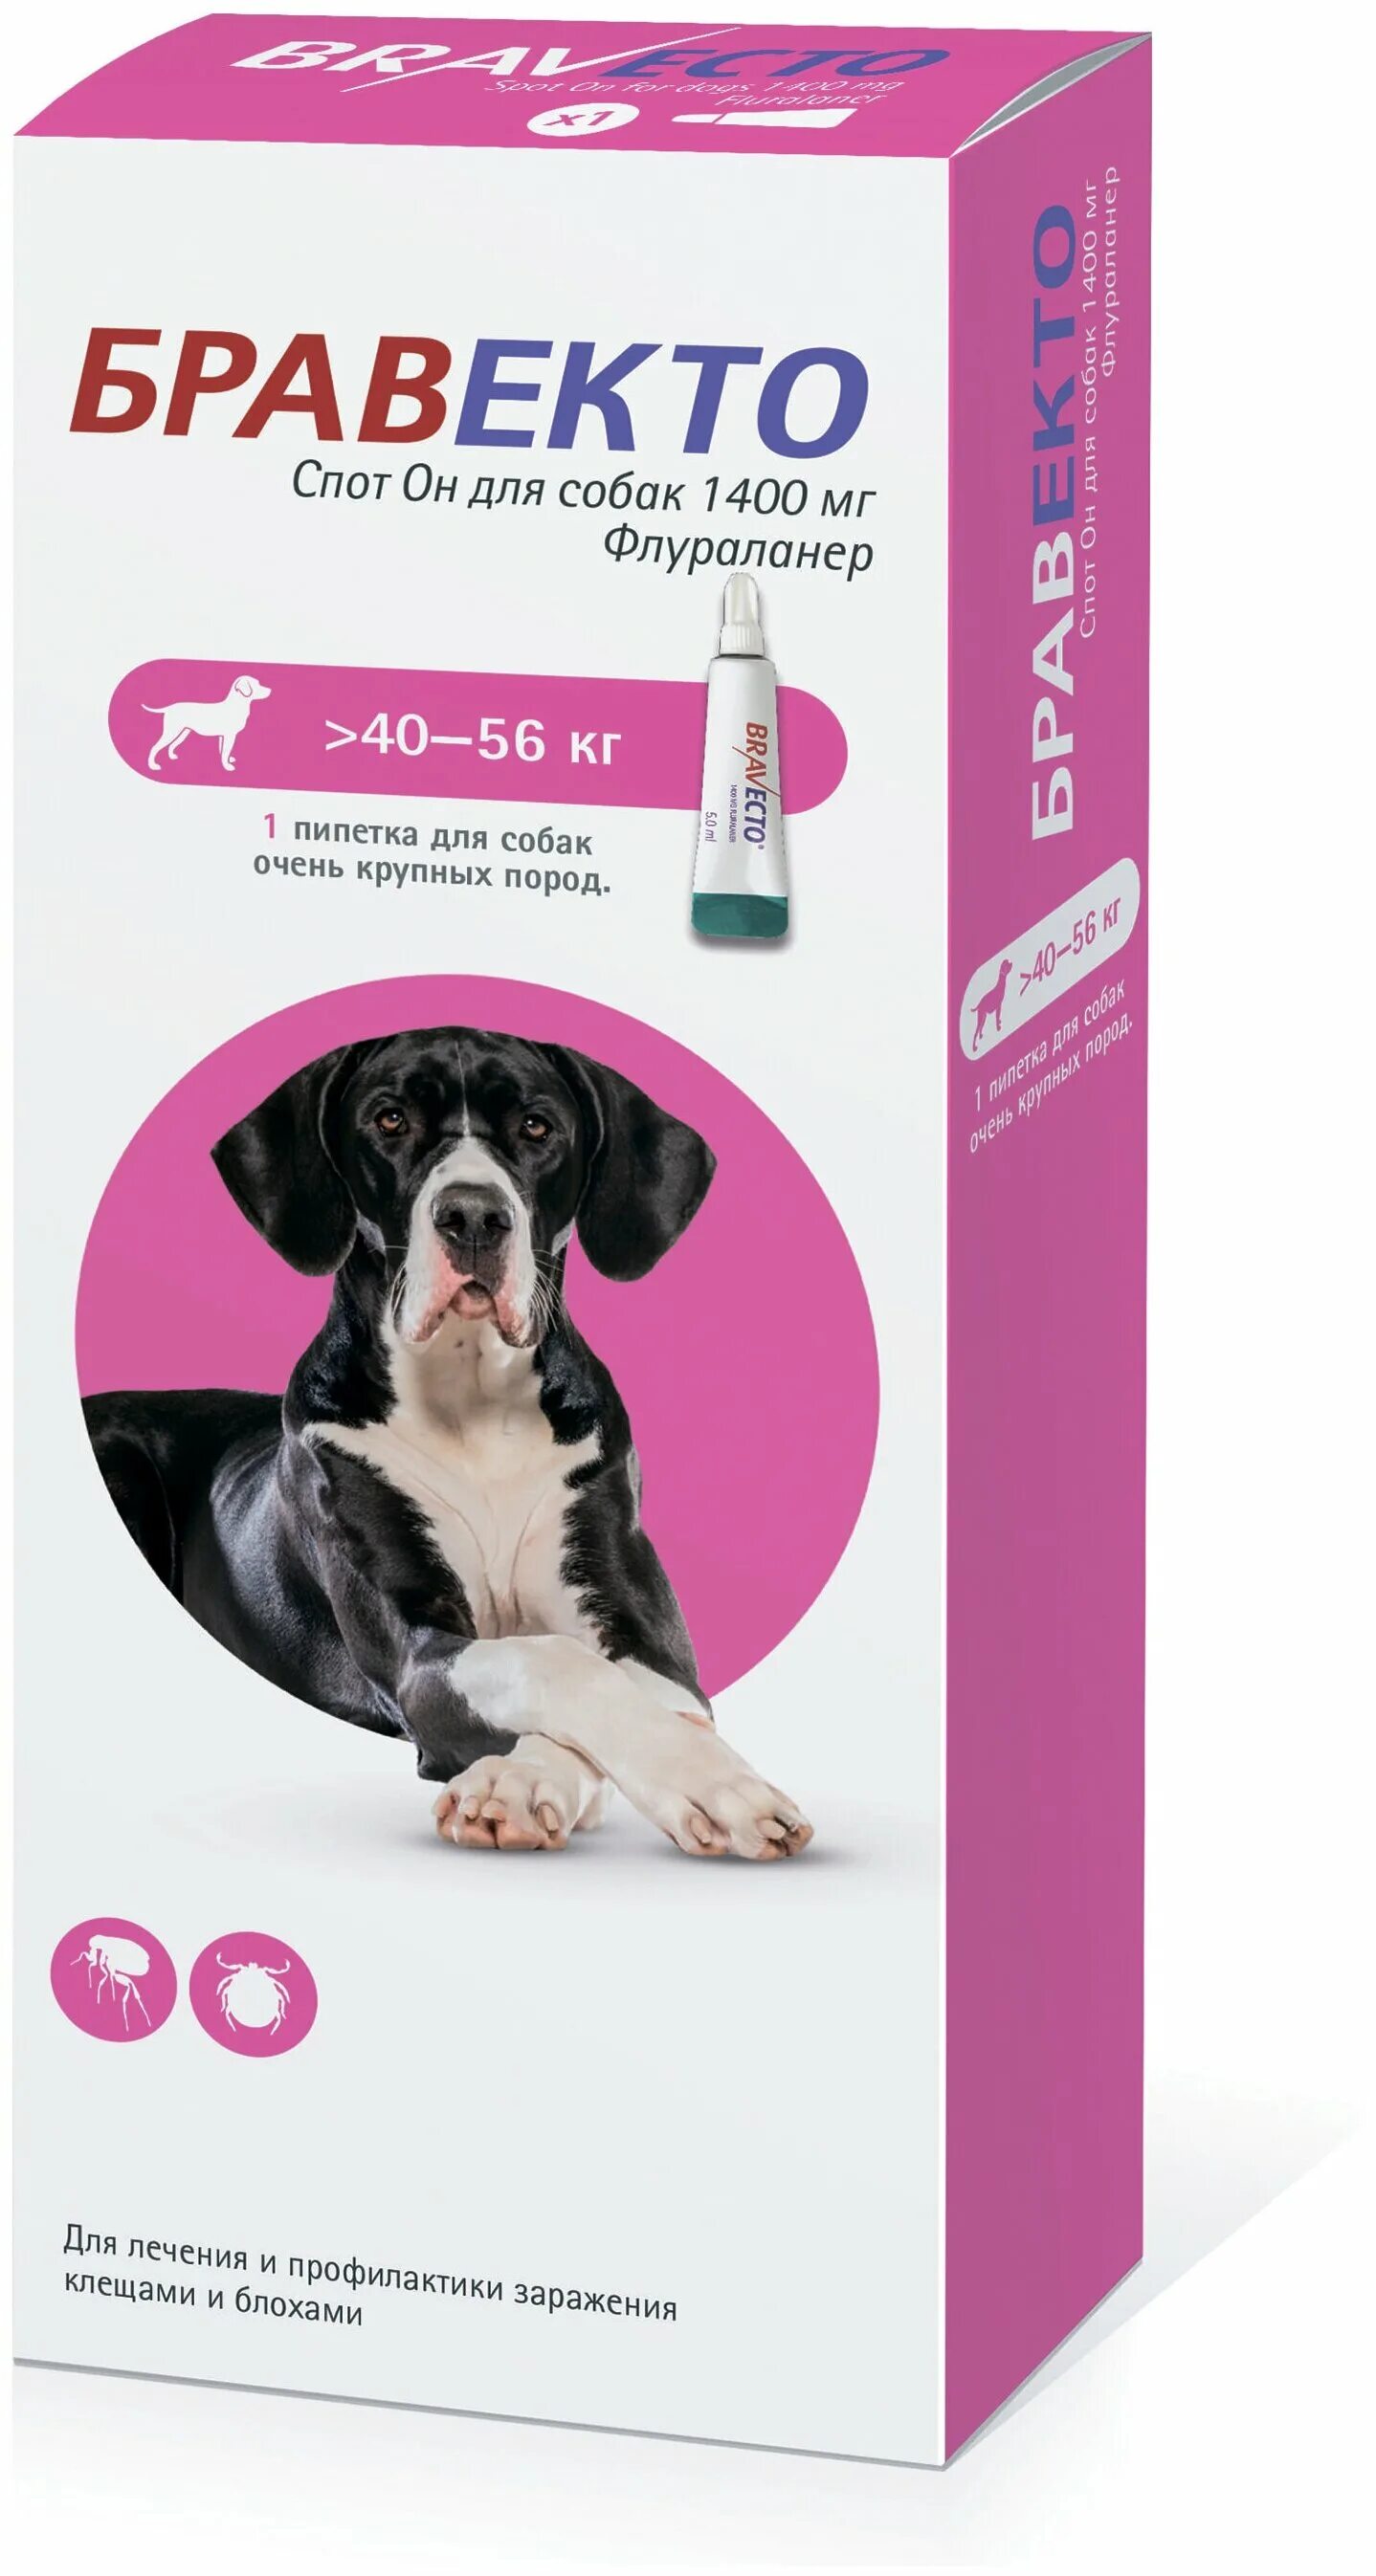 Бравекто спот он для собак (1400 мг) 40-56 кг. Бравекто (MSD animal Health) капли от блох и клещей спот он для собак 4,5-10 кг. Бравекто для собак 10-20 капли. Бравекто для собак 1400 мг 40-56. Бравекто для собак купить в калининграде